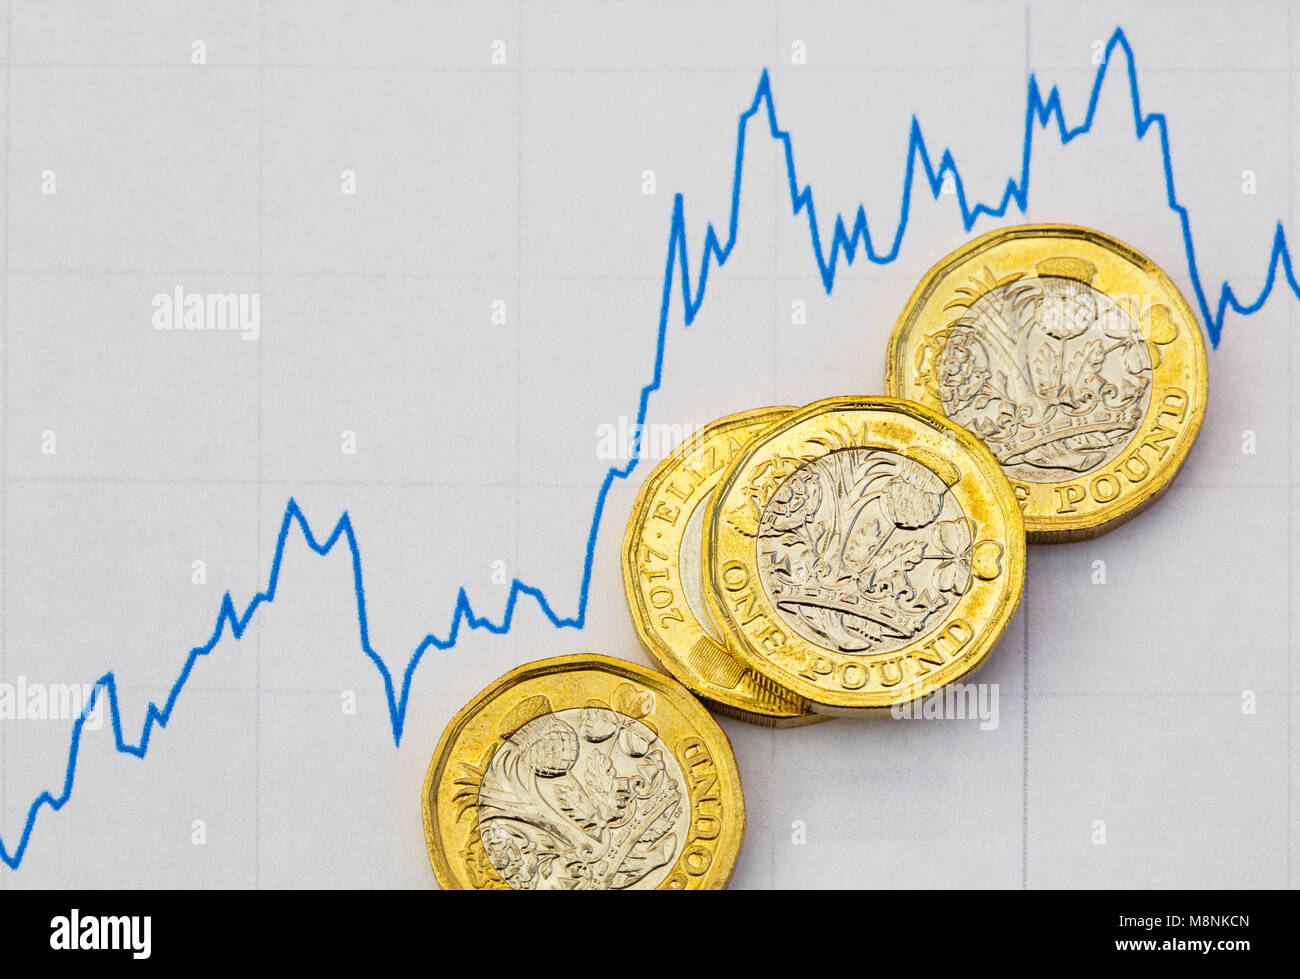 British pound nuove monete sterline denaro GBP su digital cryptocurrency trading grafico per illustrare la volatilità degli investimenti cryptocurrencies REGNO UNITO Foto Stock